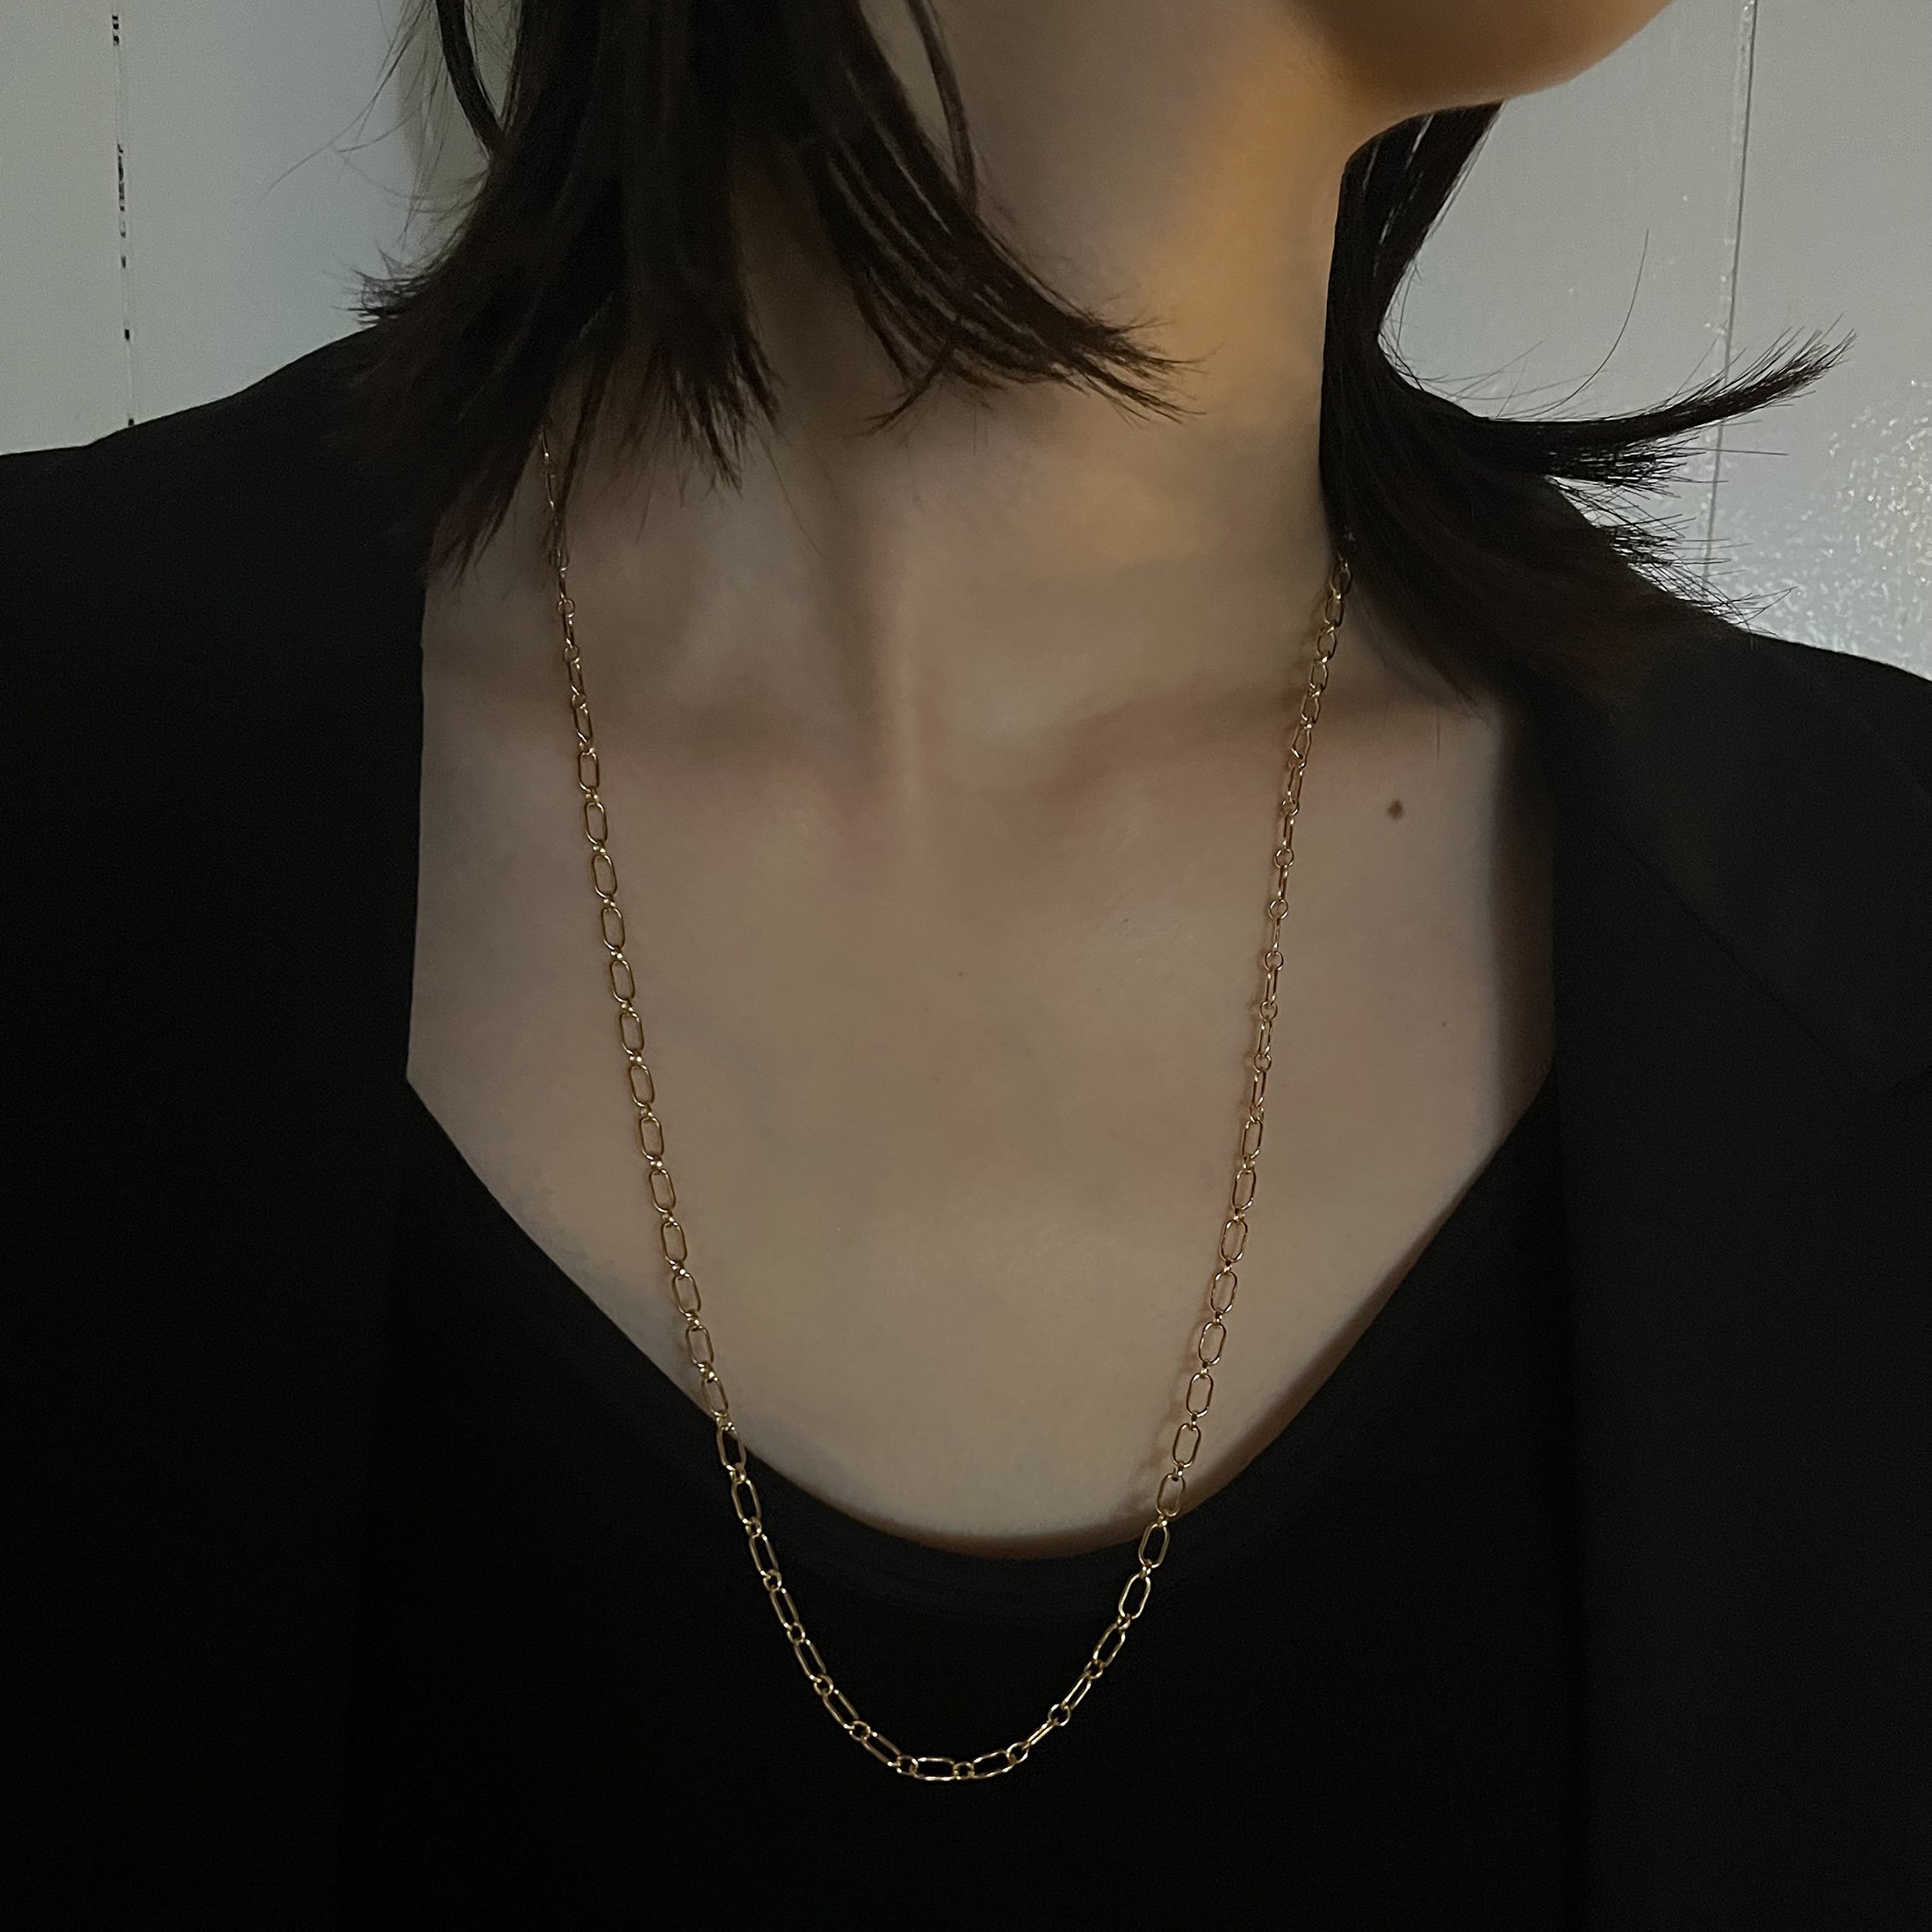 vihod - bicolor necklace GS 02